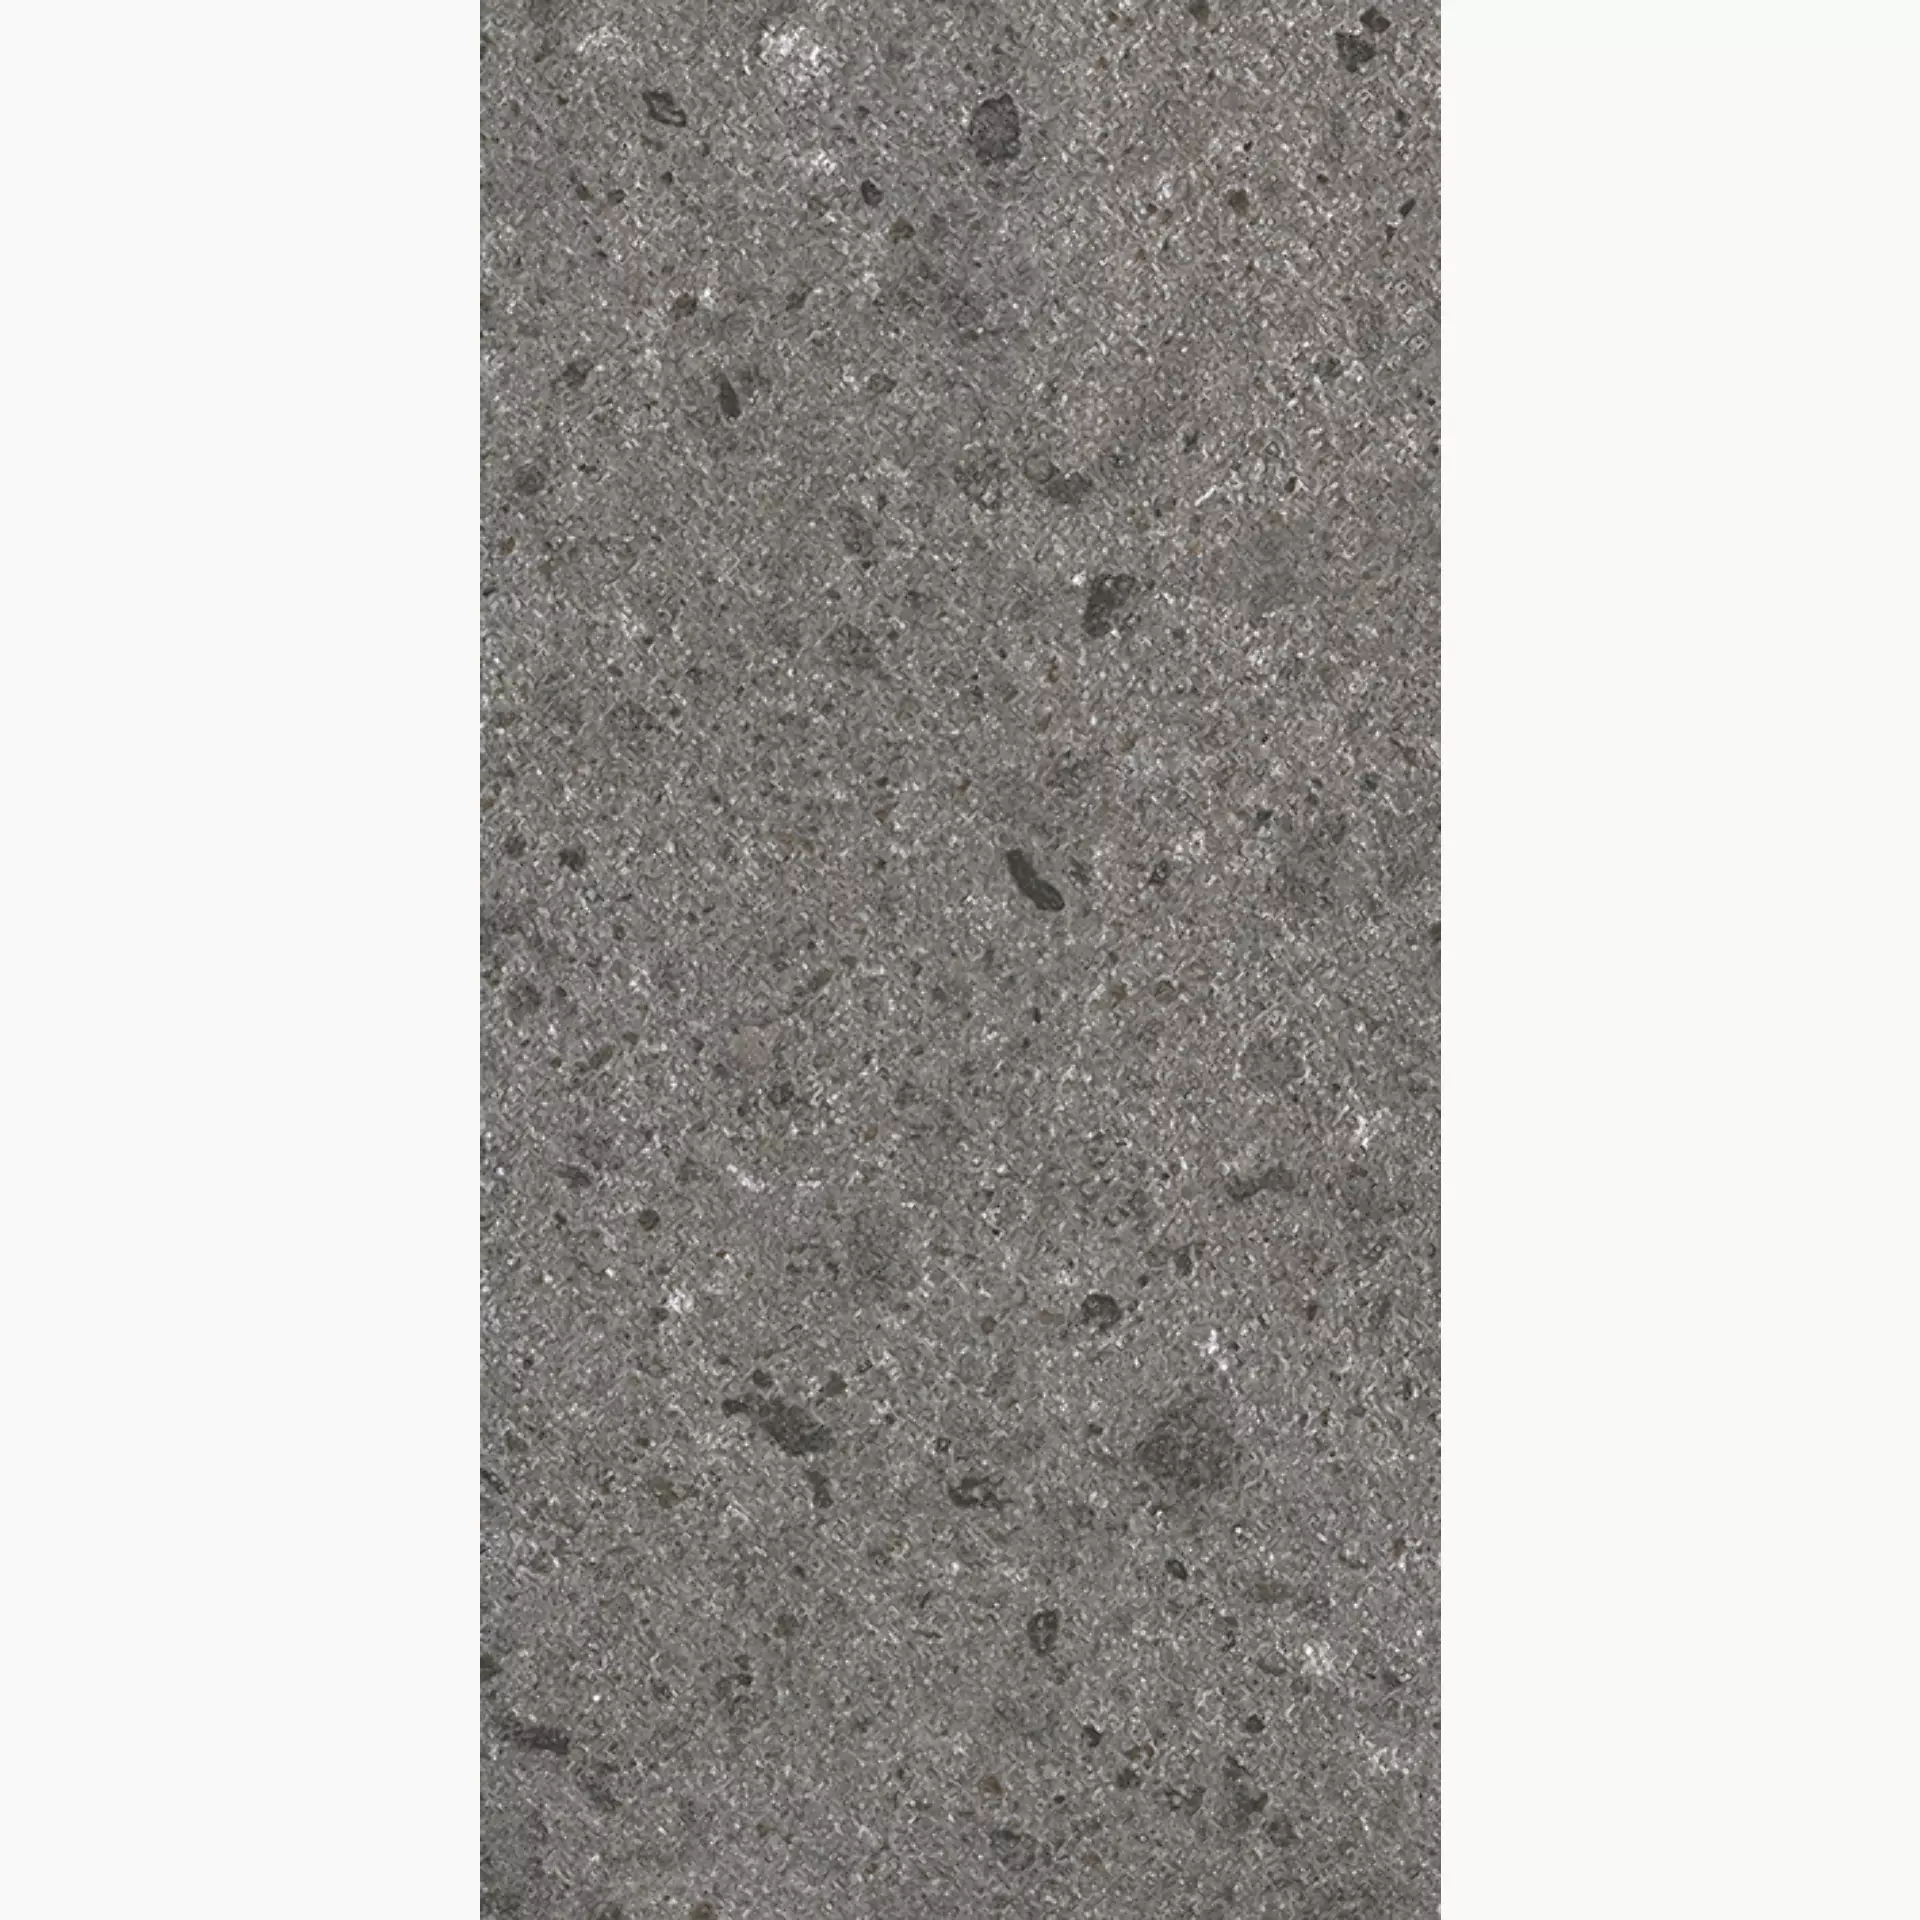 Wandfliese,Bodenfliese Villeroy & Boch Aberdeen Slate Grey Matt Slate Grey 2536-SB9V matt 30x60cm rektifiziert 10mm